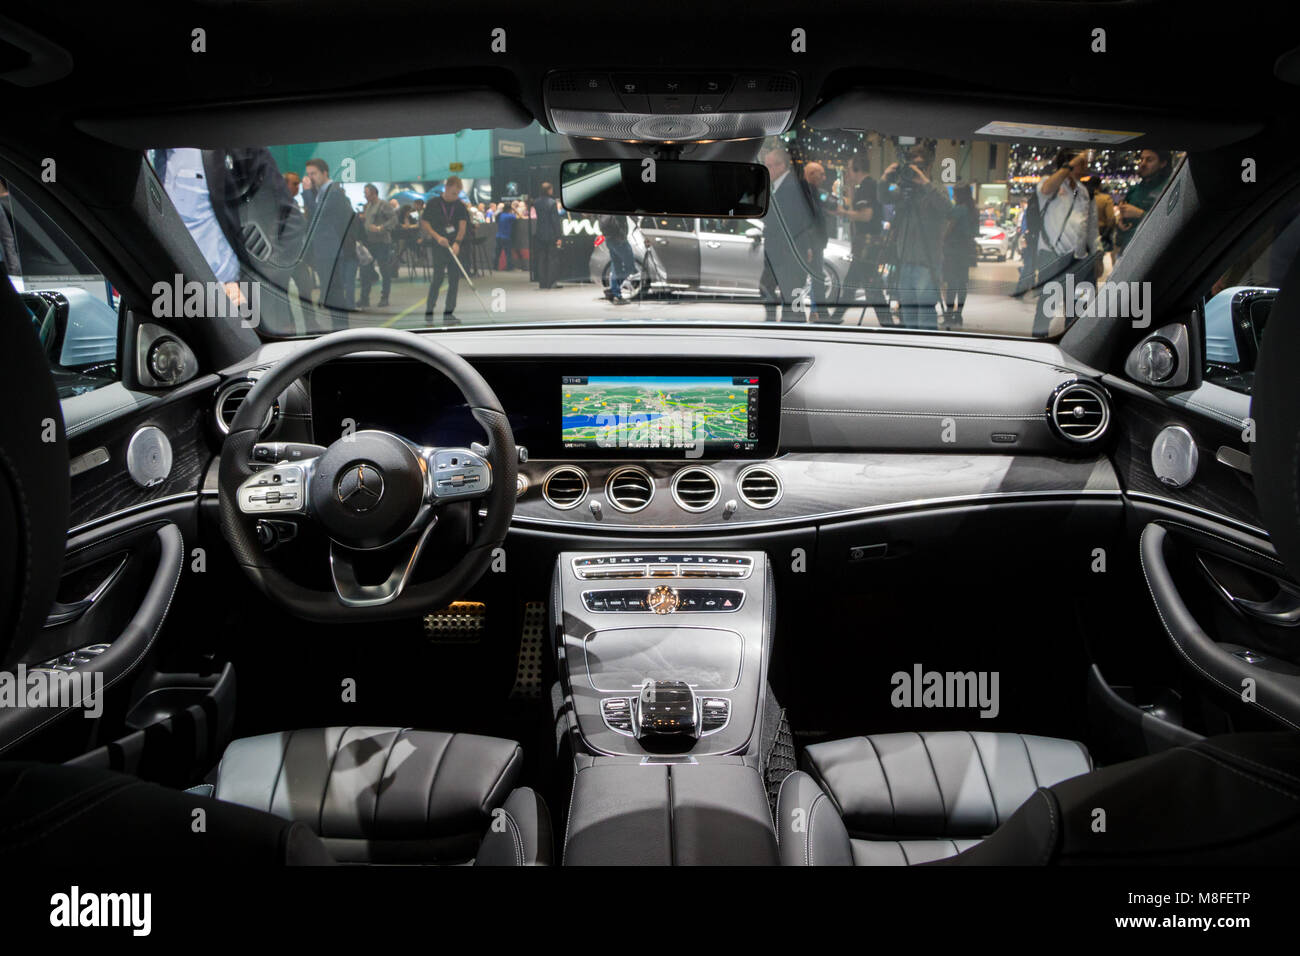 Ginevra, Svizzera - Marzo 7, 2018: interno della nuova Mercedes Benz E300 ibrido Diesel auto presentata all'88Geneva International Motor Show. Foto Stock